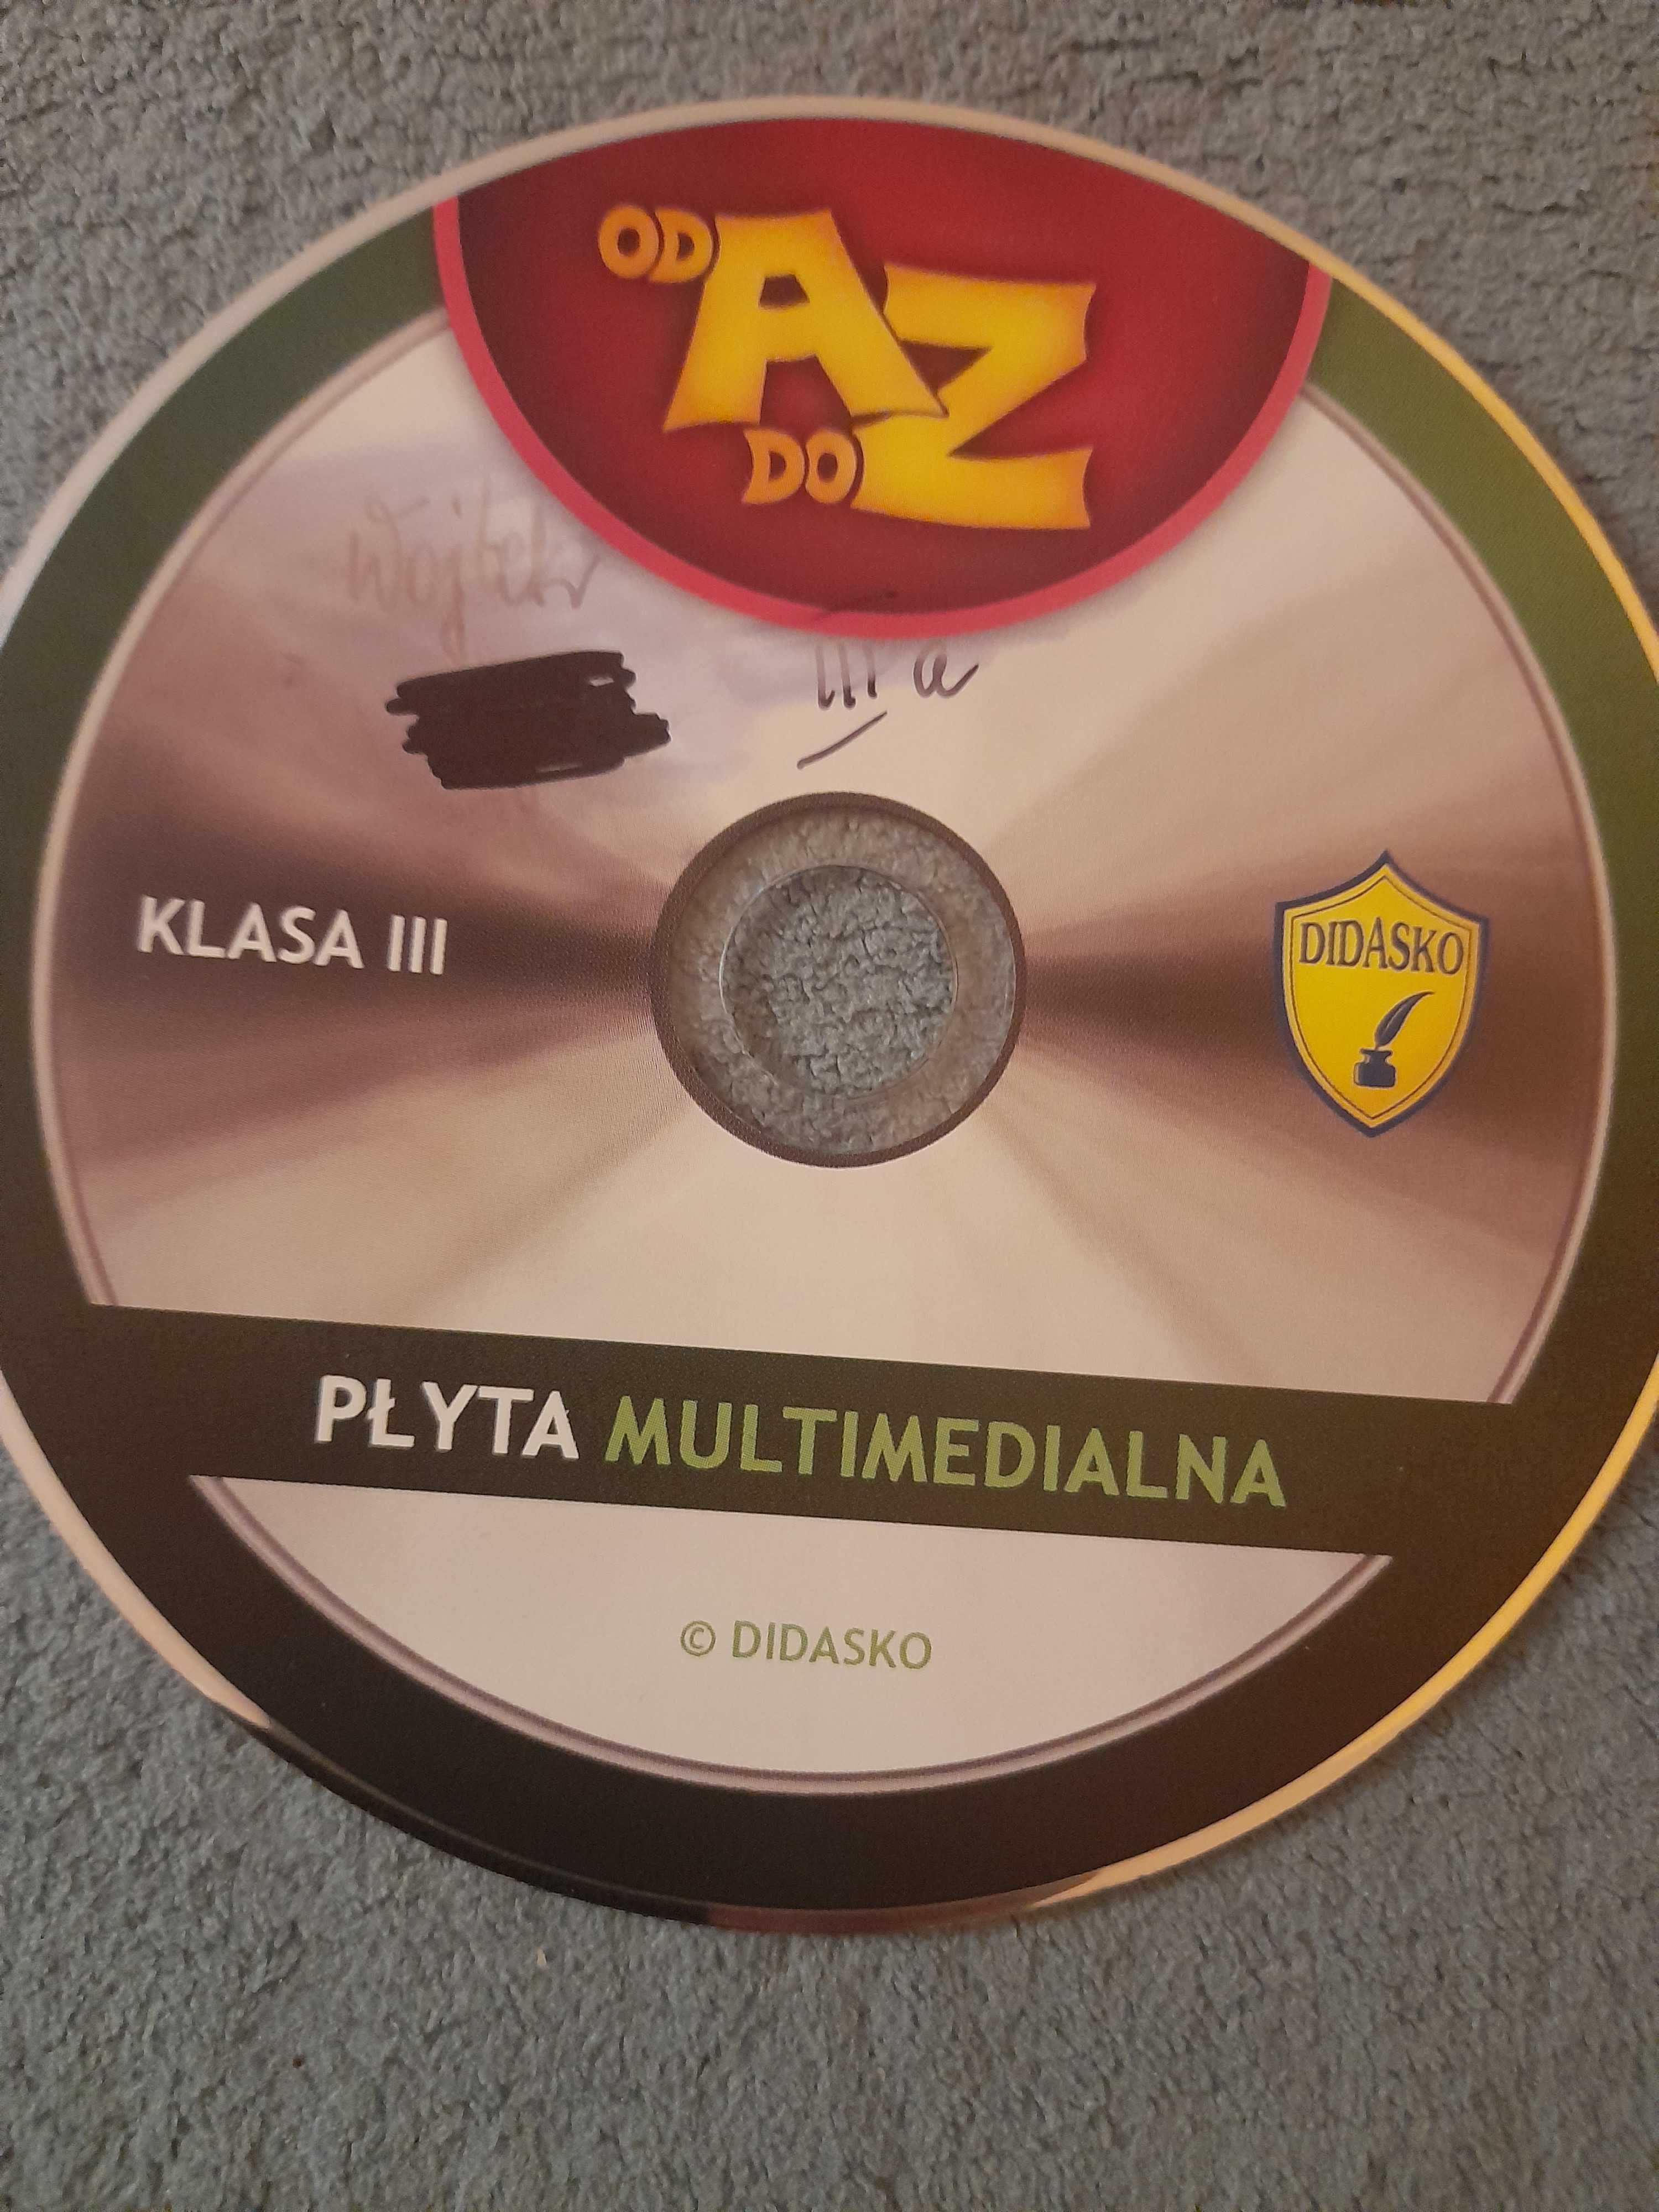 Płyta - Didasko od A do Z - Kl III